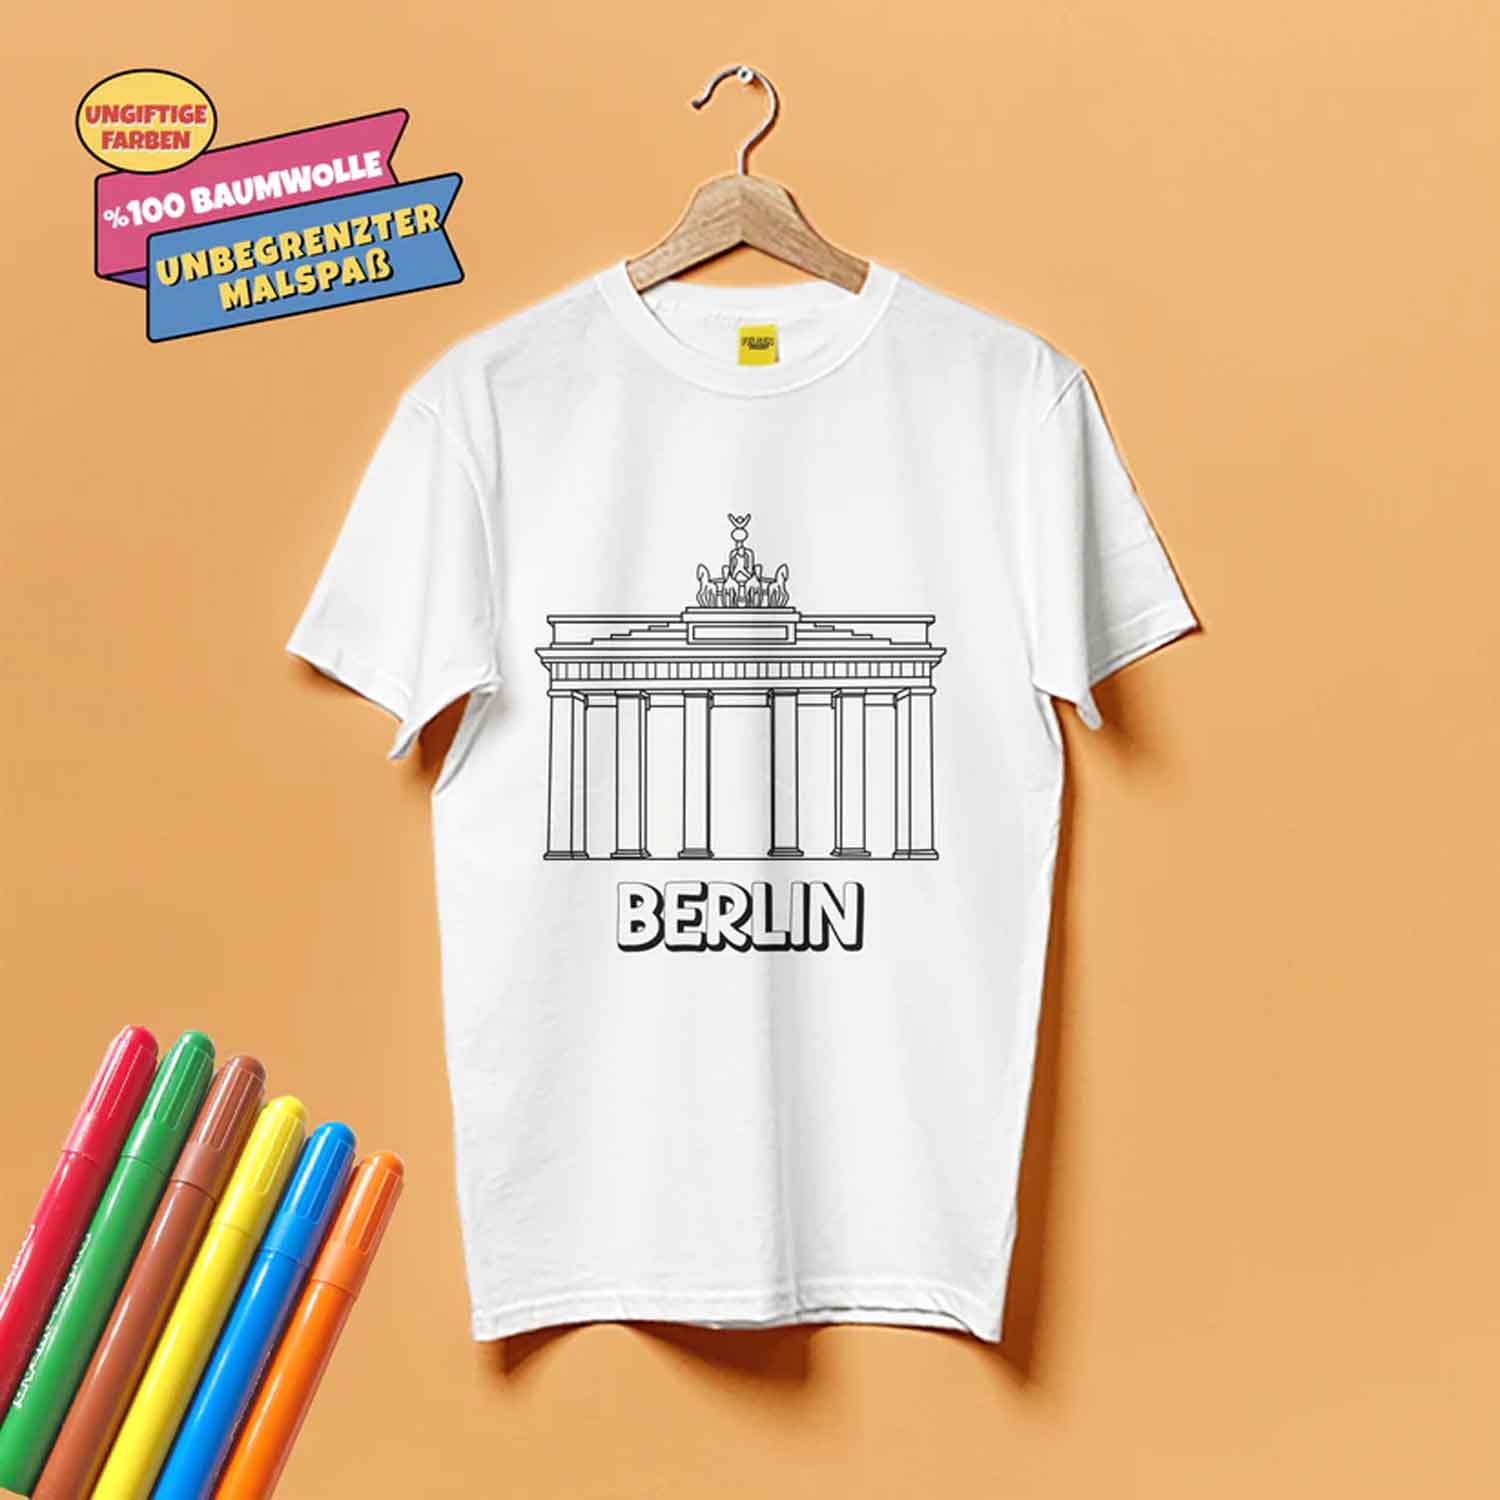 Kinder T-Shirt Set zum Bemalen - verschiedene tolle Berlin Motive inkl. 6 Filzstifte